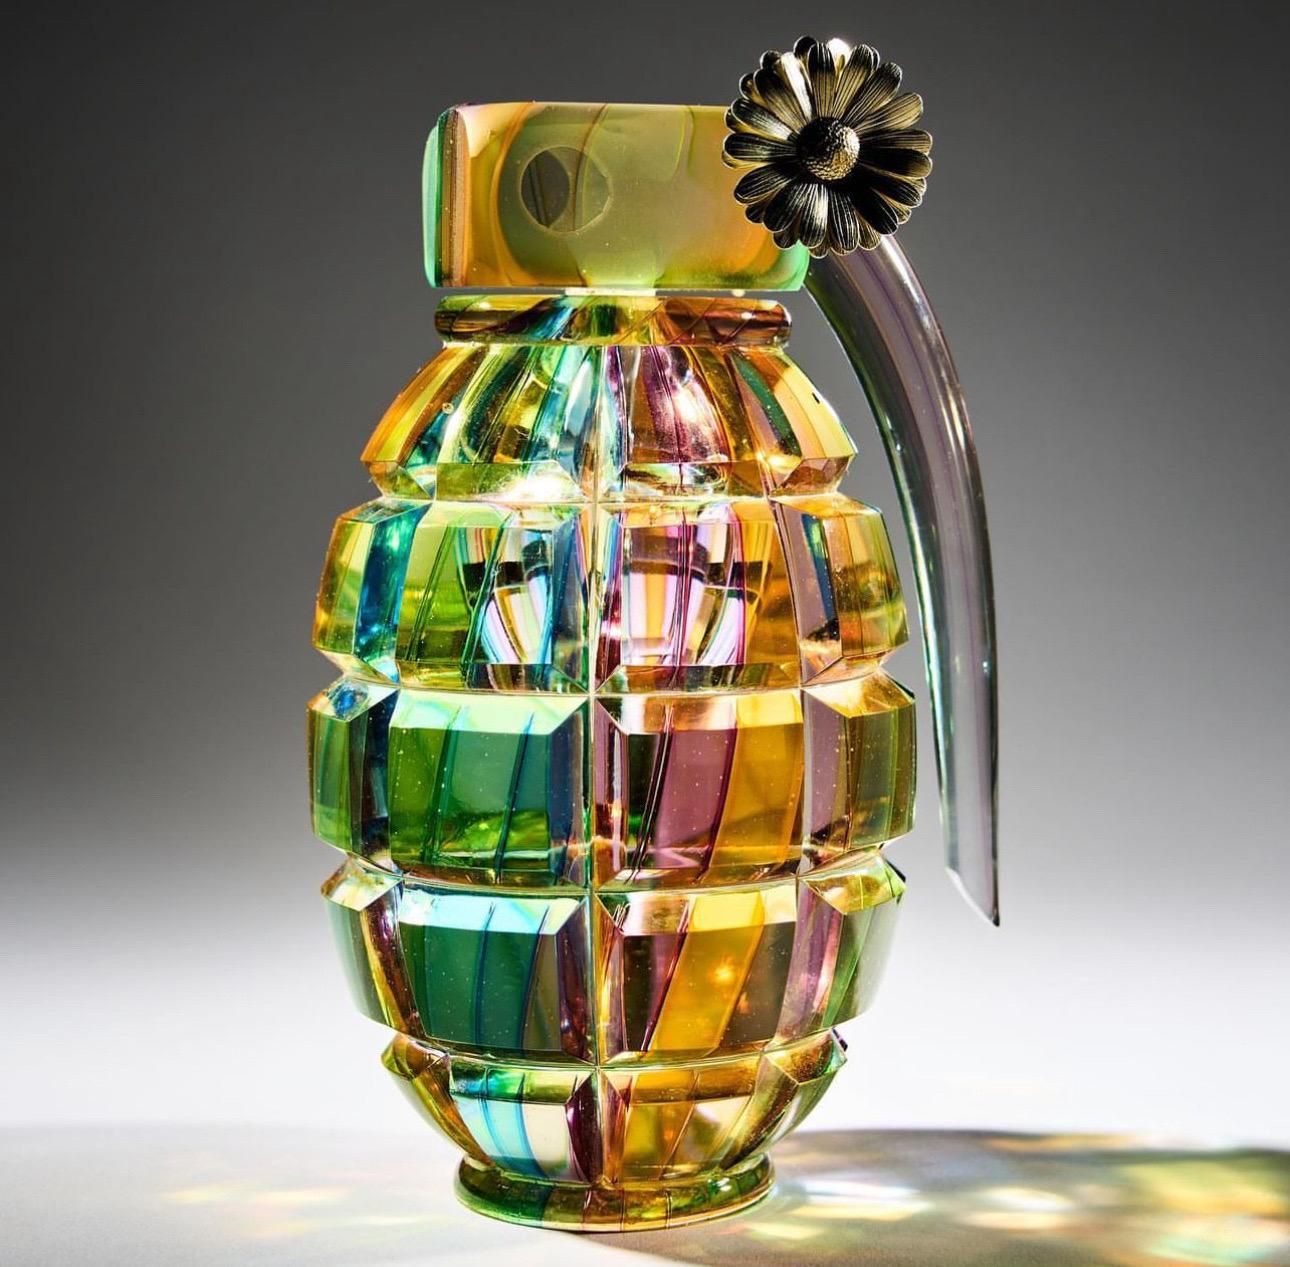 Layne Rowe, Regenbogengrenade, 2023

Heissgeformtes Glas, geschliffen und poliert, zusammengesetzt mit massivem Gold-Gänseblümchen

H14 x B7,5 x T6,5cm

Als verführerisches und verletzliches MATERIAL verwandelt Glas einen potenziell schädlichen